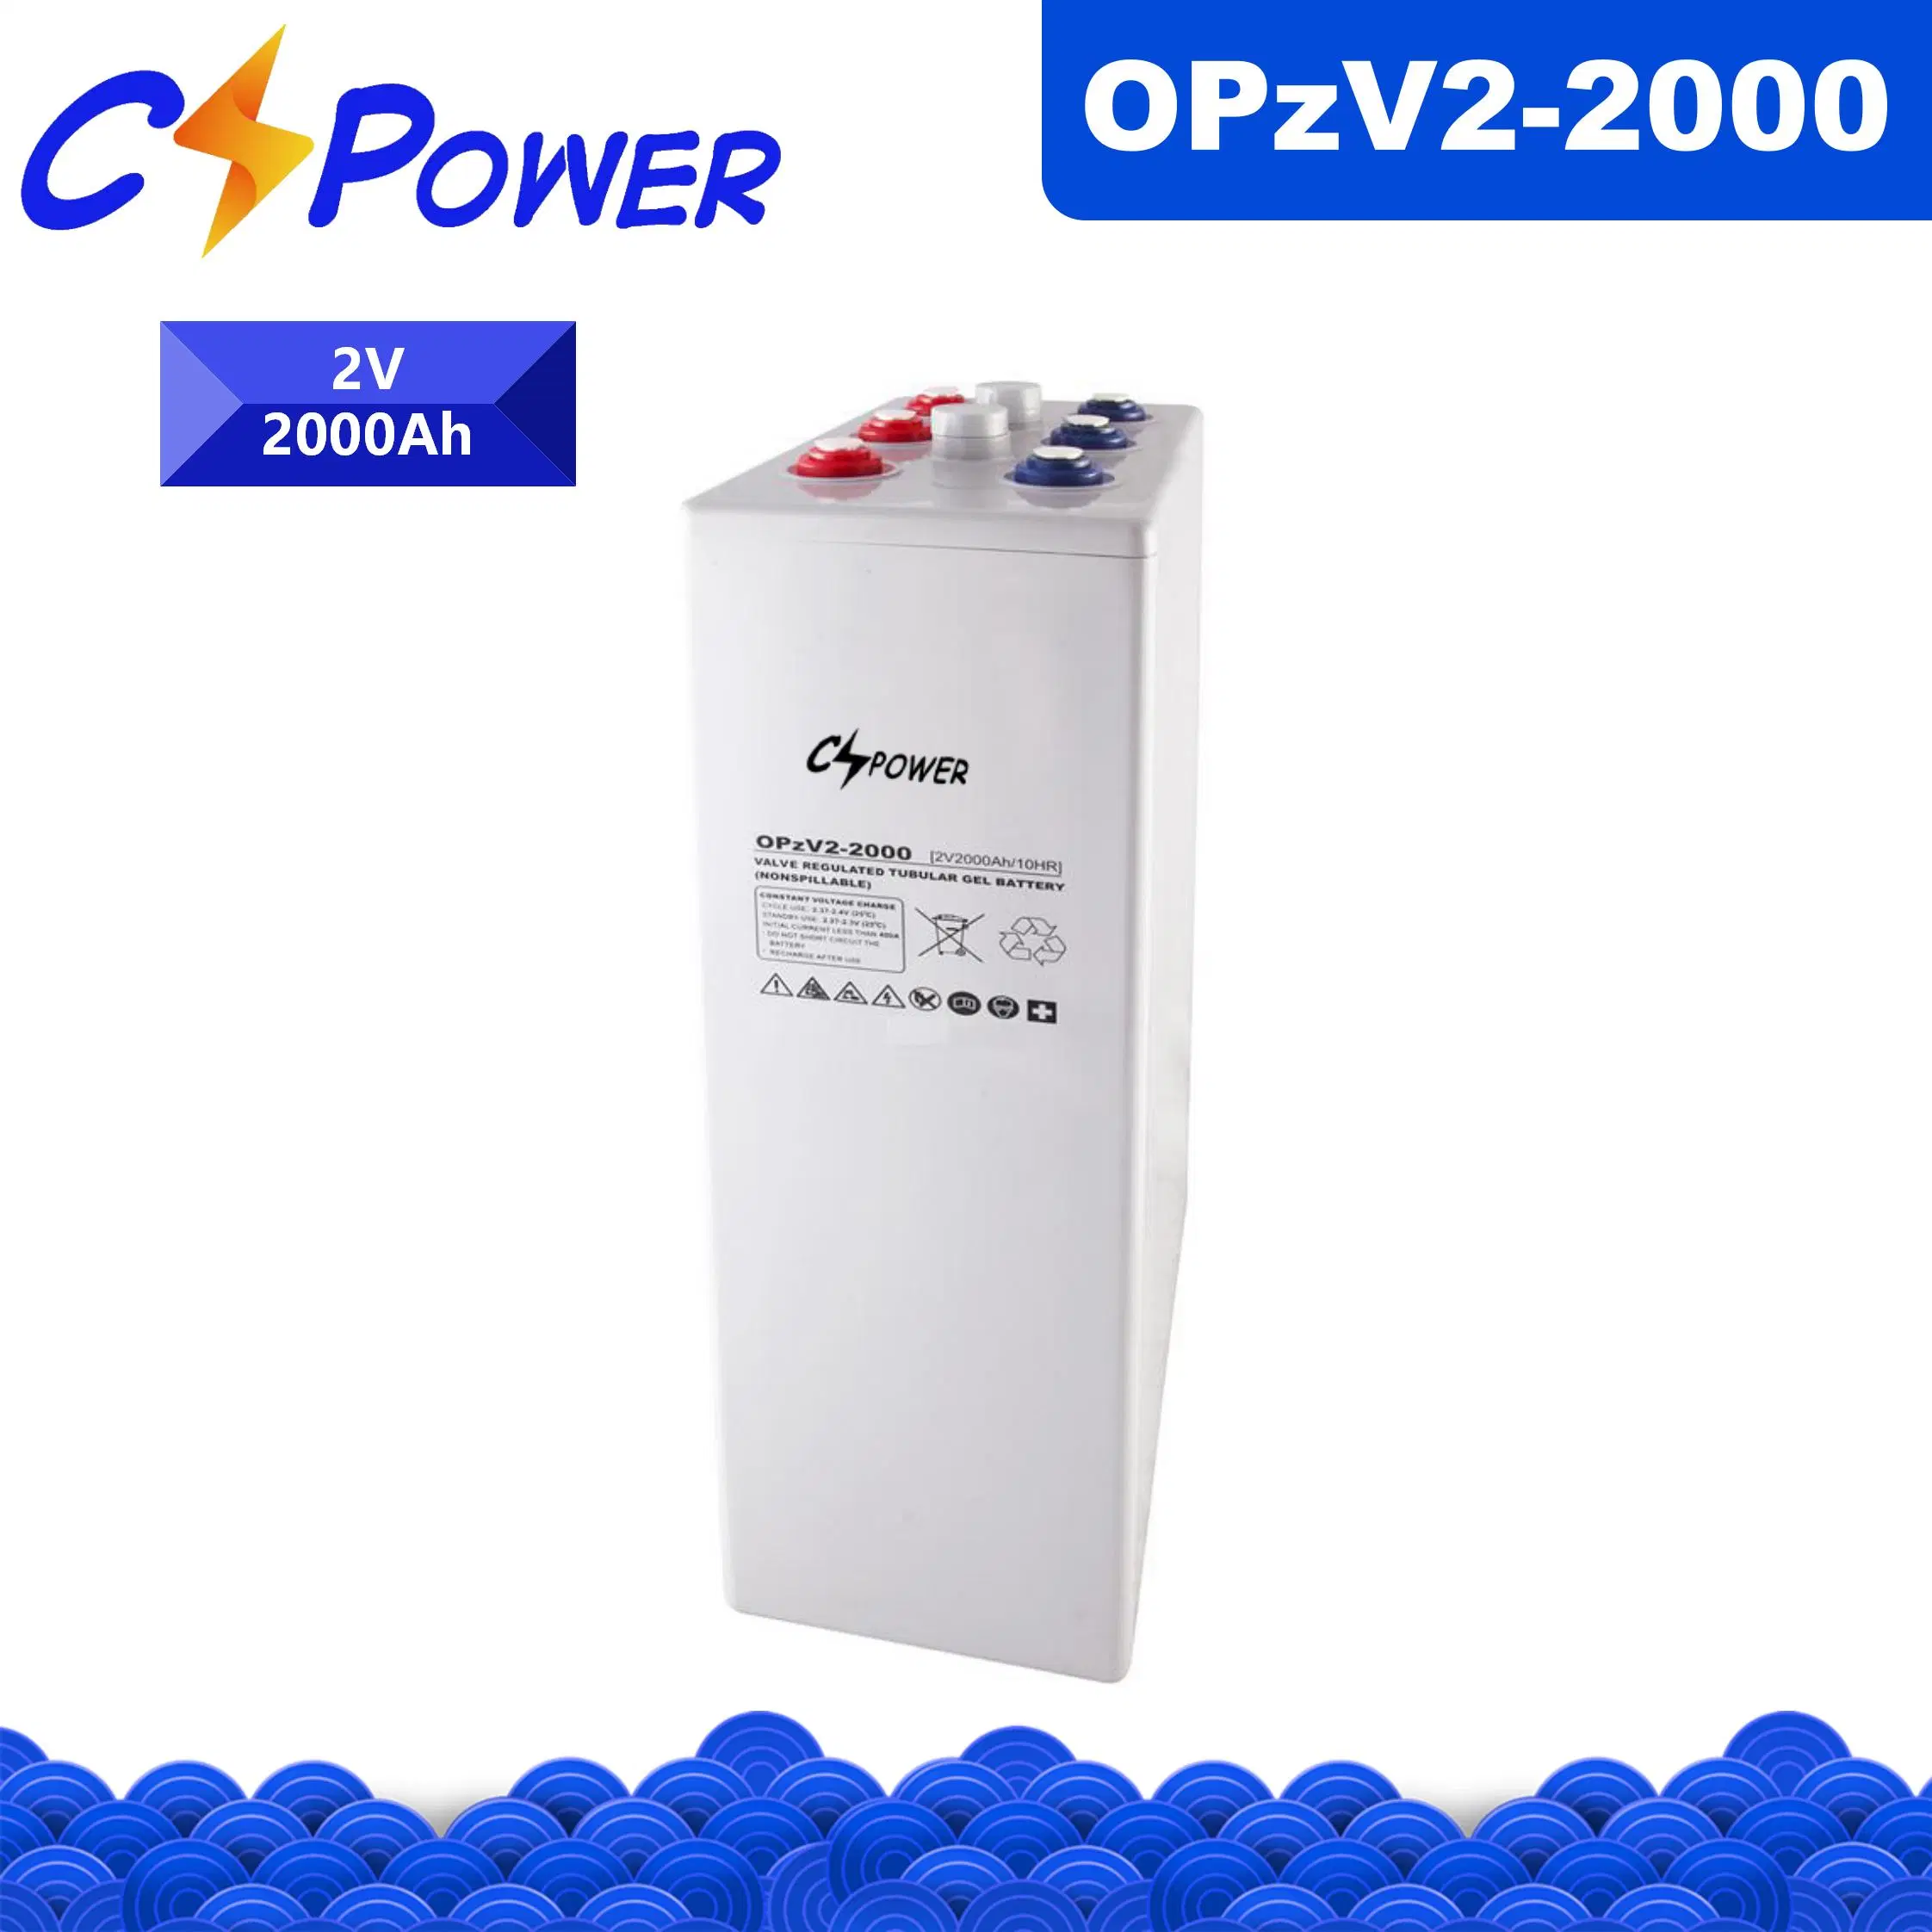 Cspower Opzv-Gel-Tubular-Battery/Opzv-Solar-Power-Battery 2V 2000ah для телекоммуникационного оборудования и солнечной системы питания